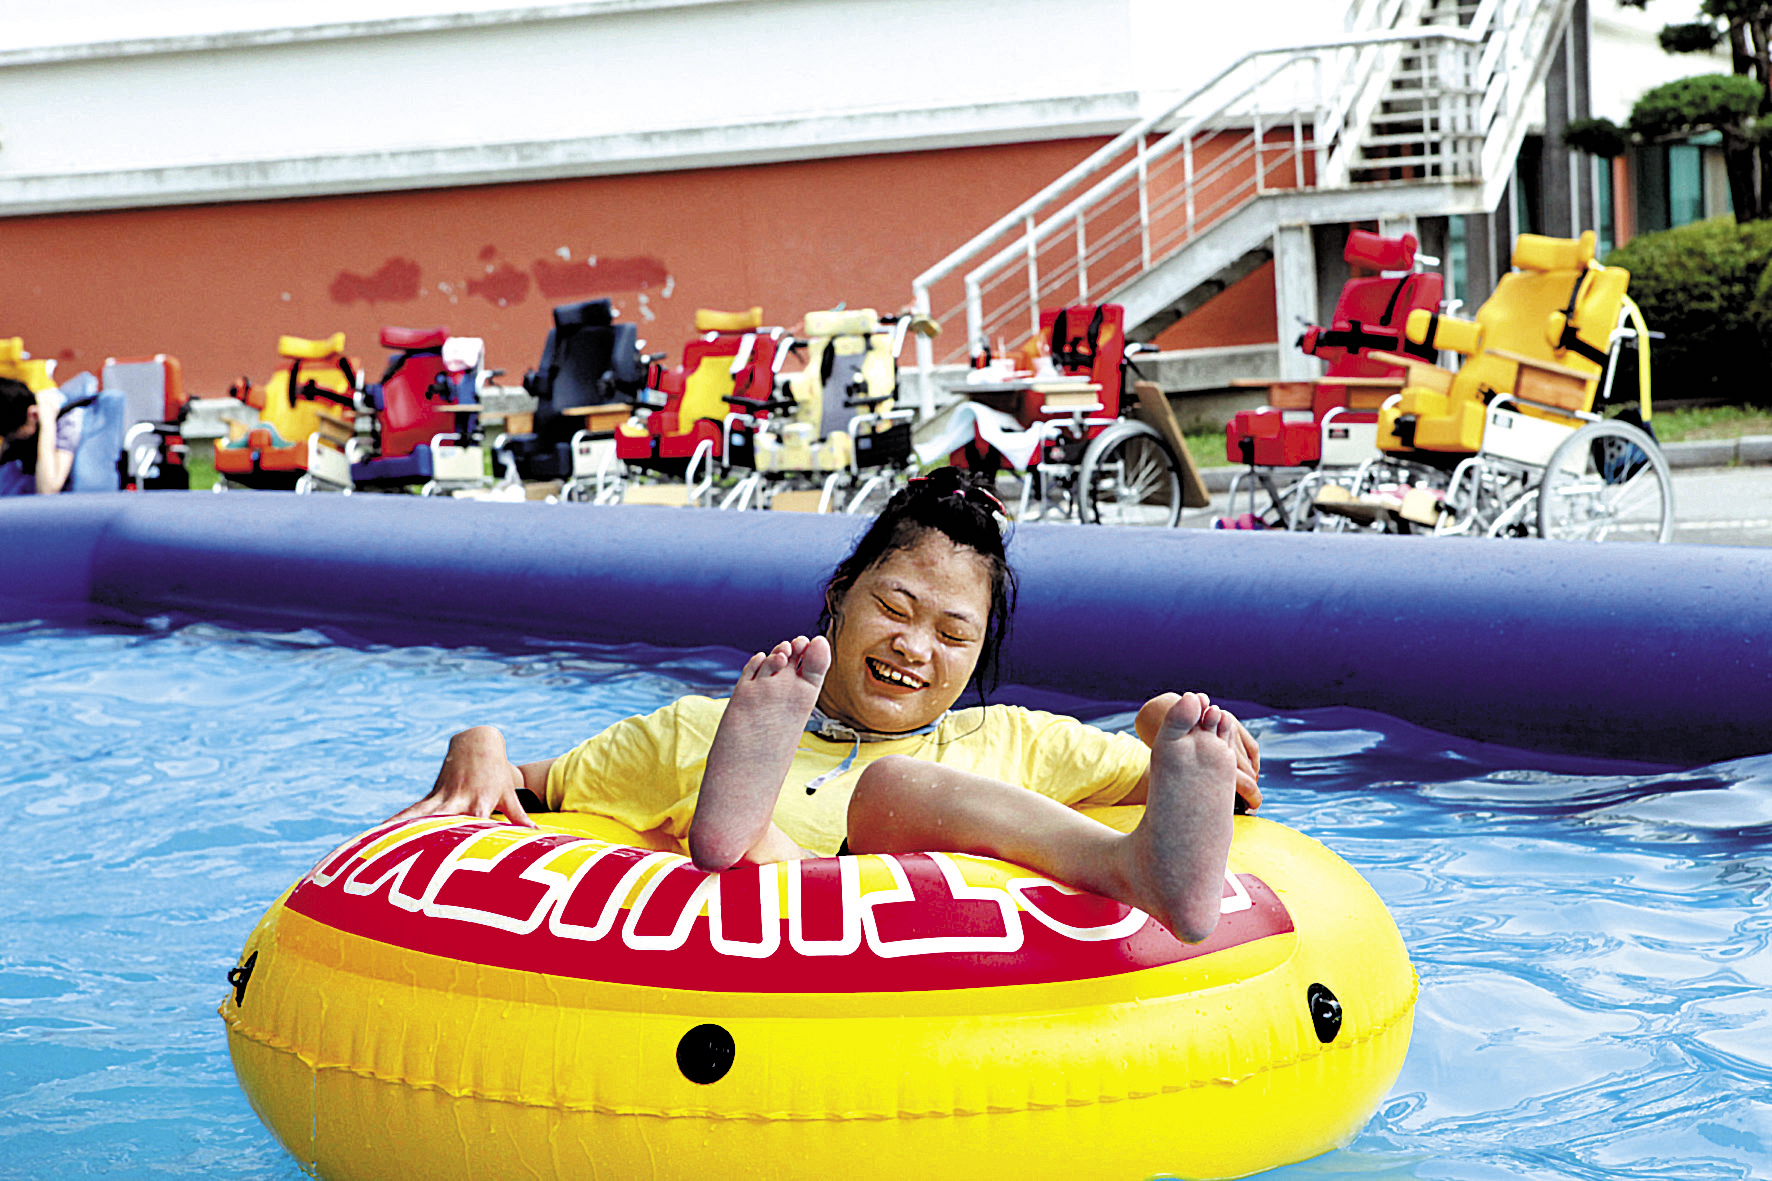 승가원 여름통합캠프에서 노란색 튜브를 타고 에어바운스에서 물놀이를 즐기고 있다. 얼굴에는 웃음이 가득한 모습이다.